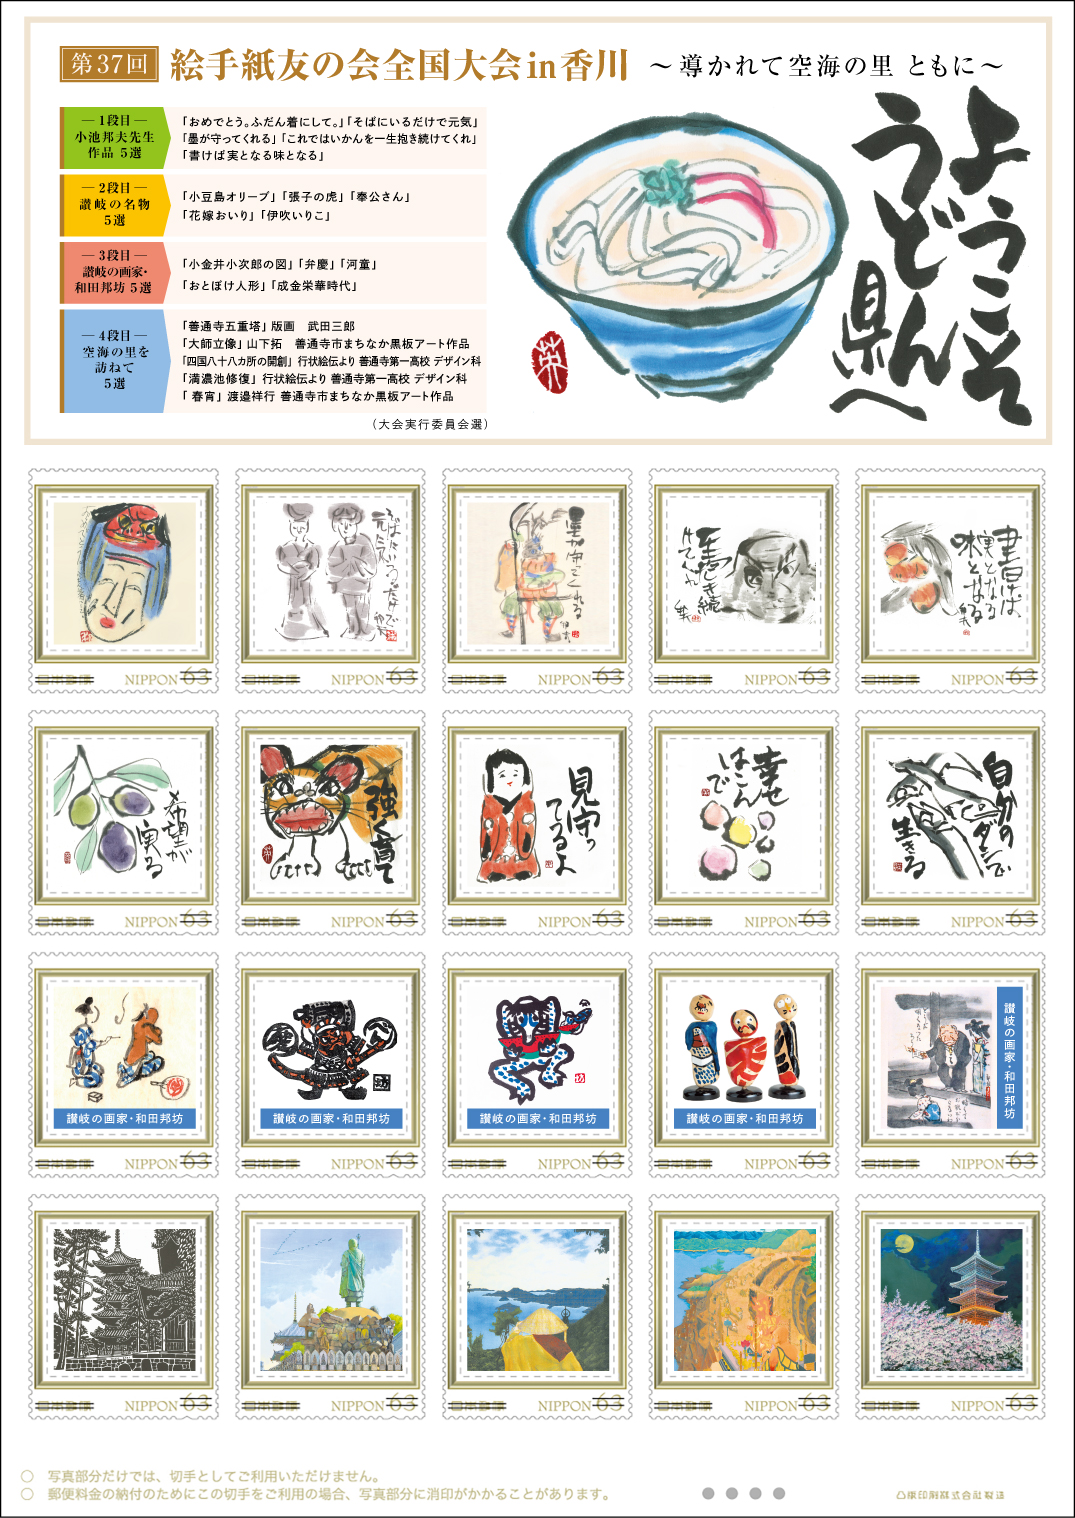 オリジナルフレーム切手「第37回絵手紙友の会全国大会in香川」の販売開始と贈呈式の開催